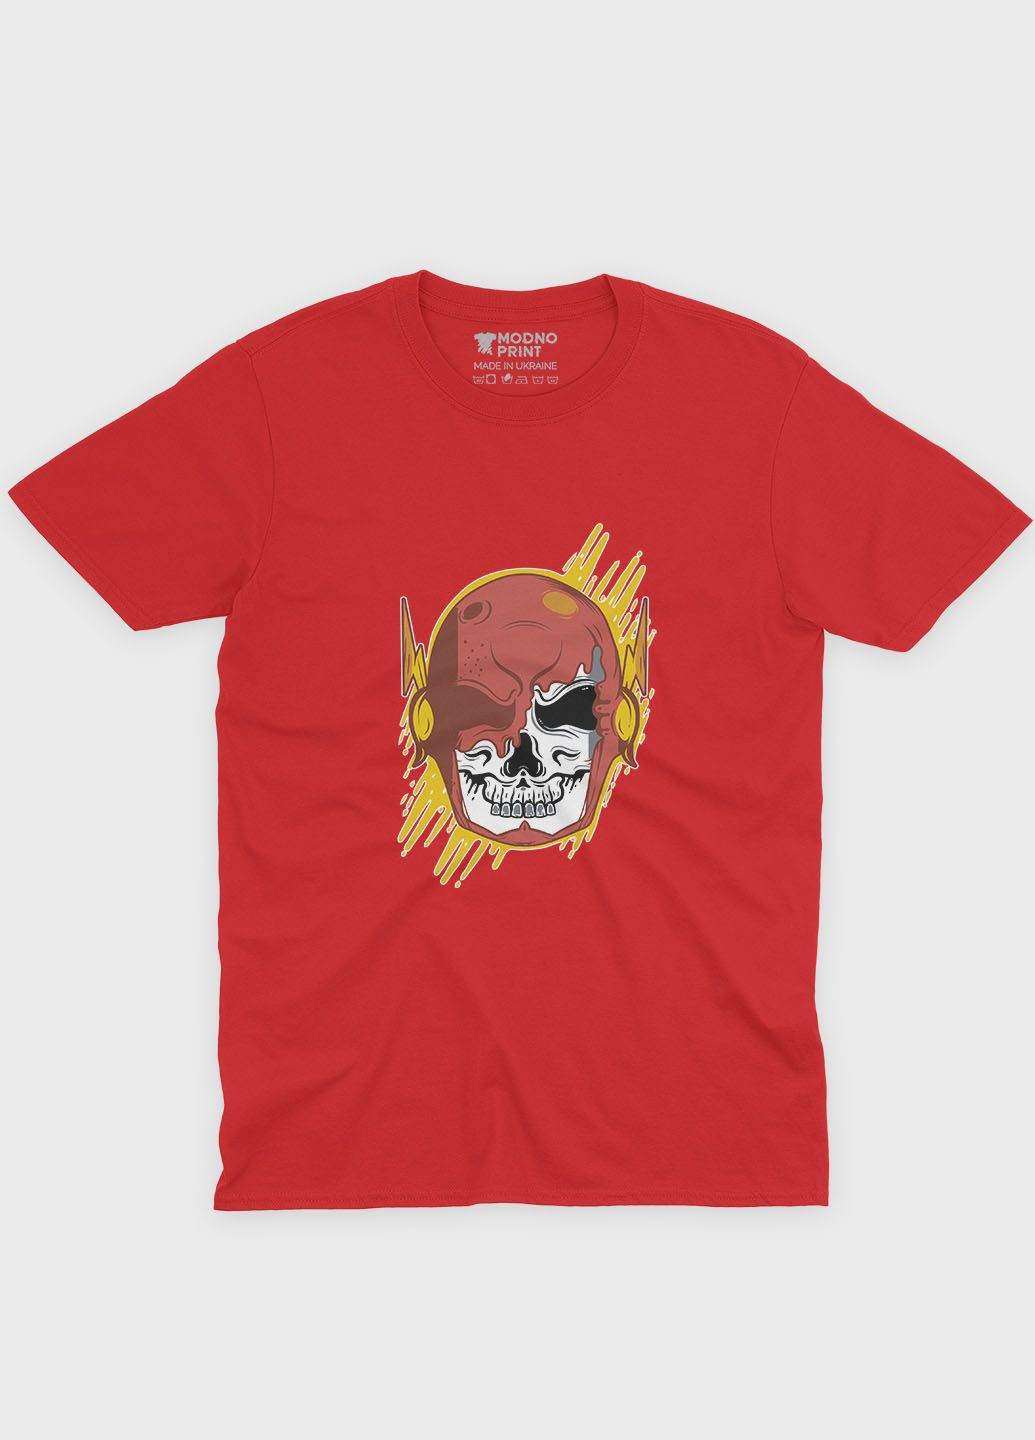 Красная демисезонная футболка для девочки с принтом супергероя - флэш (ts001-1-sre-006-010-003-g) Modno